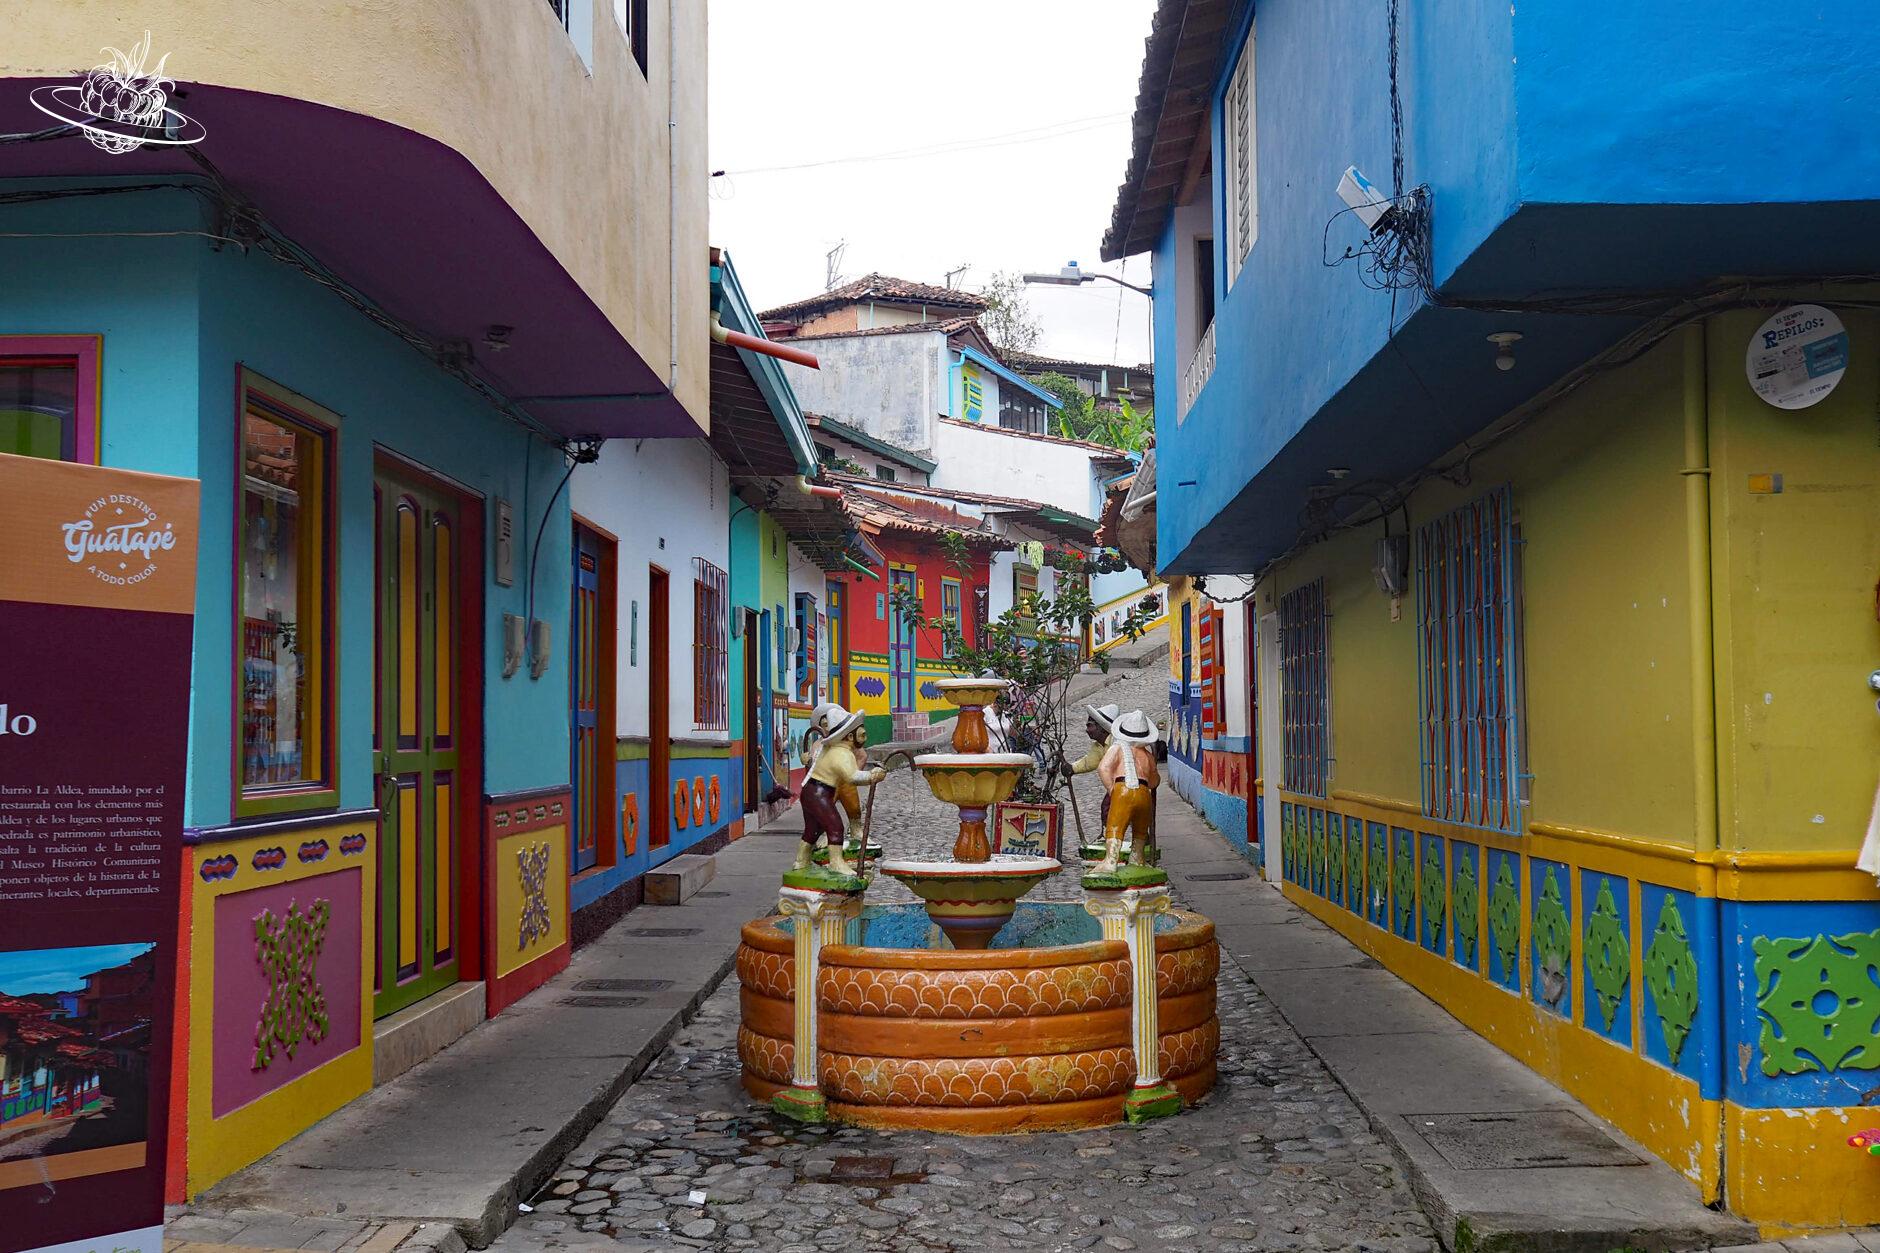 Gasse mit farbigen Häusern und einem dekorierten Bunnen in der Mitte